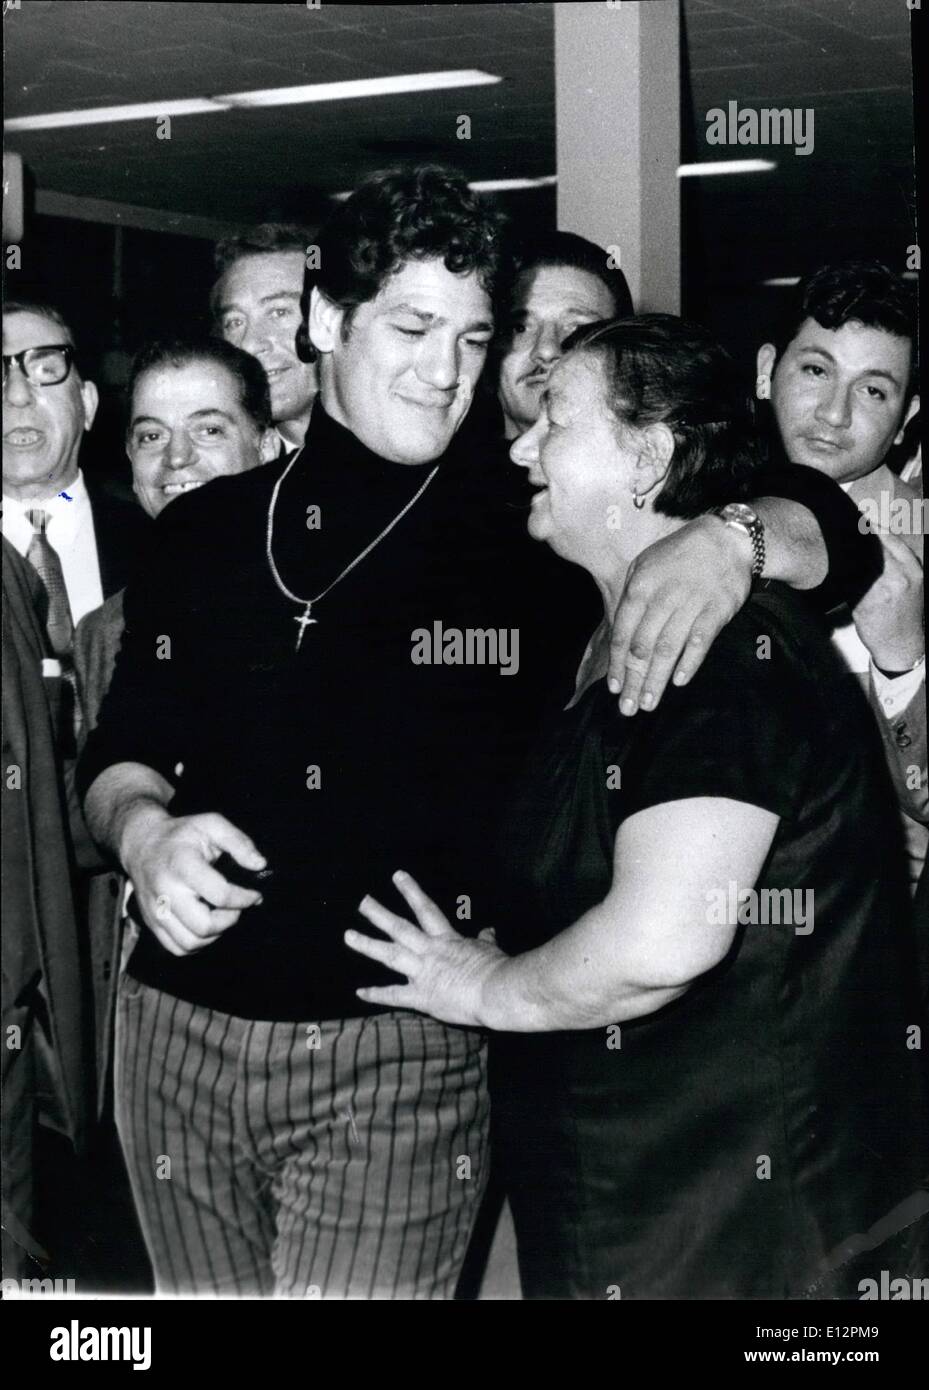 24 février 2012 - La fin tragique d'un boxeur argentin dans United States. Buenos Aires, 25 mai 1976. C'est Oscar Natalio Bonavena, l'un des boxeurs de l'Argentine en lui montrant une photo récente après le retour d'un de ses matches et le montrant avec sa mère toujours aussi fier de son fils. Et maintenant, tout est terminé en raison de la fait. Bonavena était assasinated près de Reno, Nevada en vertu de gangster des circonstances similaires. - Bonavena était le 7e rang au monde boxer catégorie. Banque D'Images